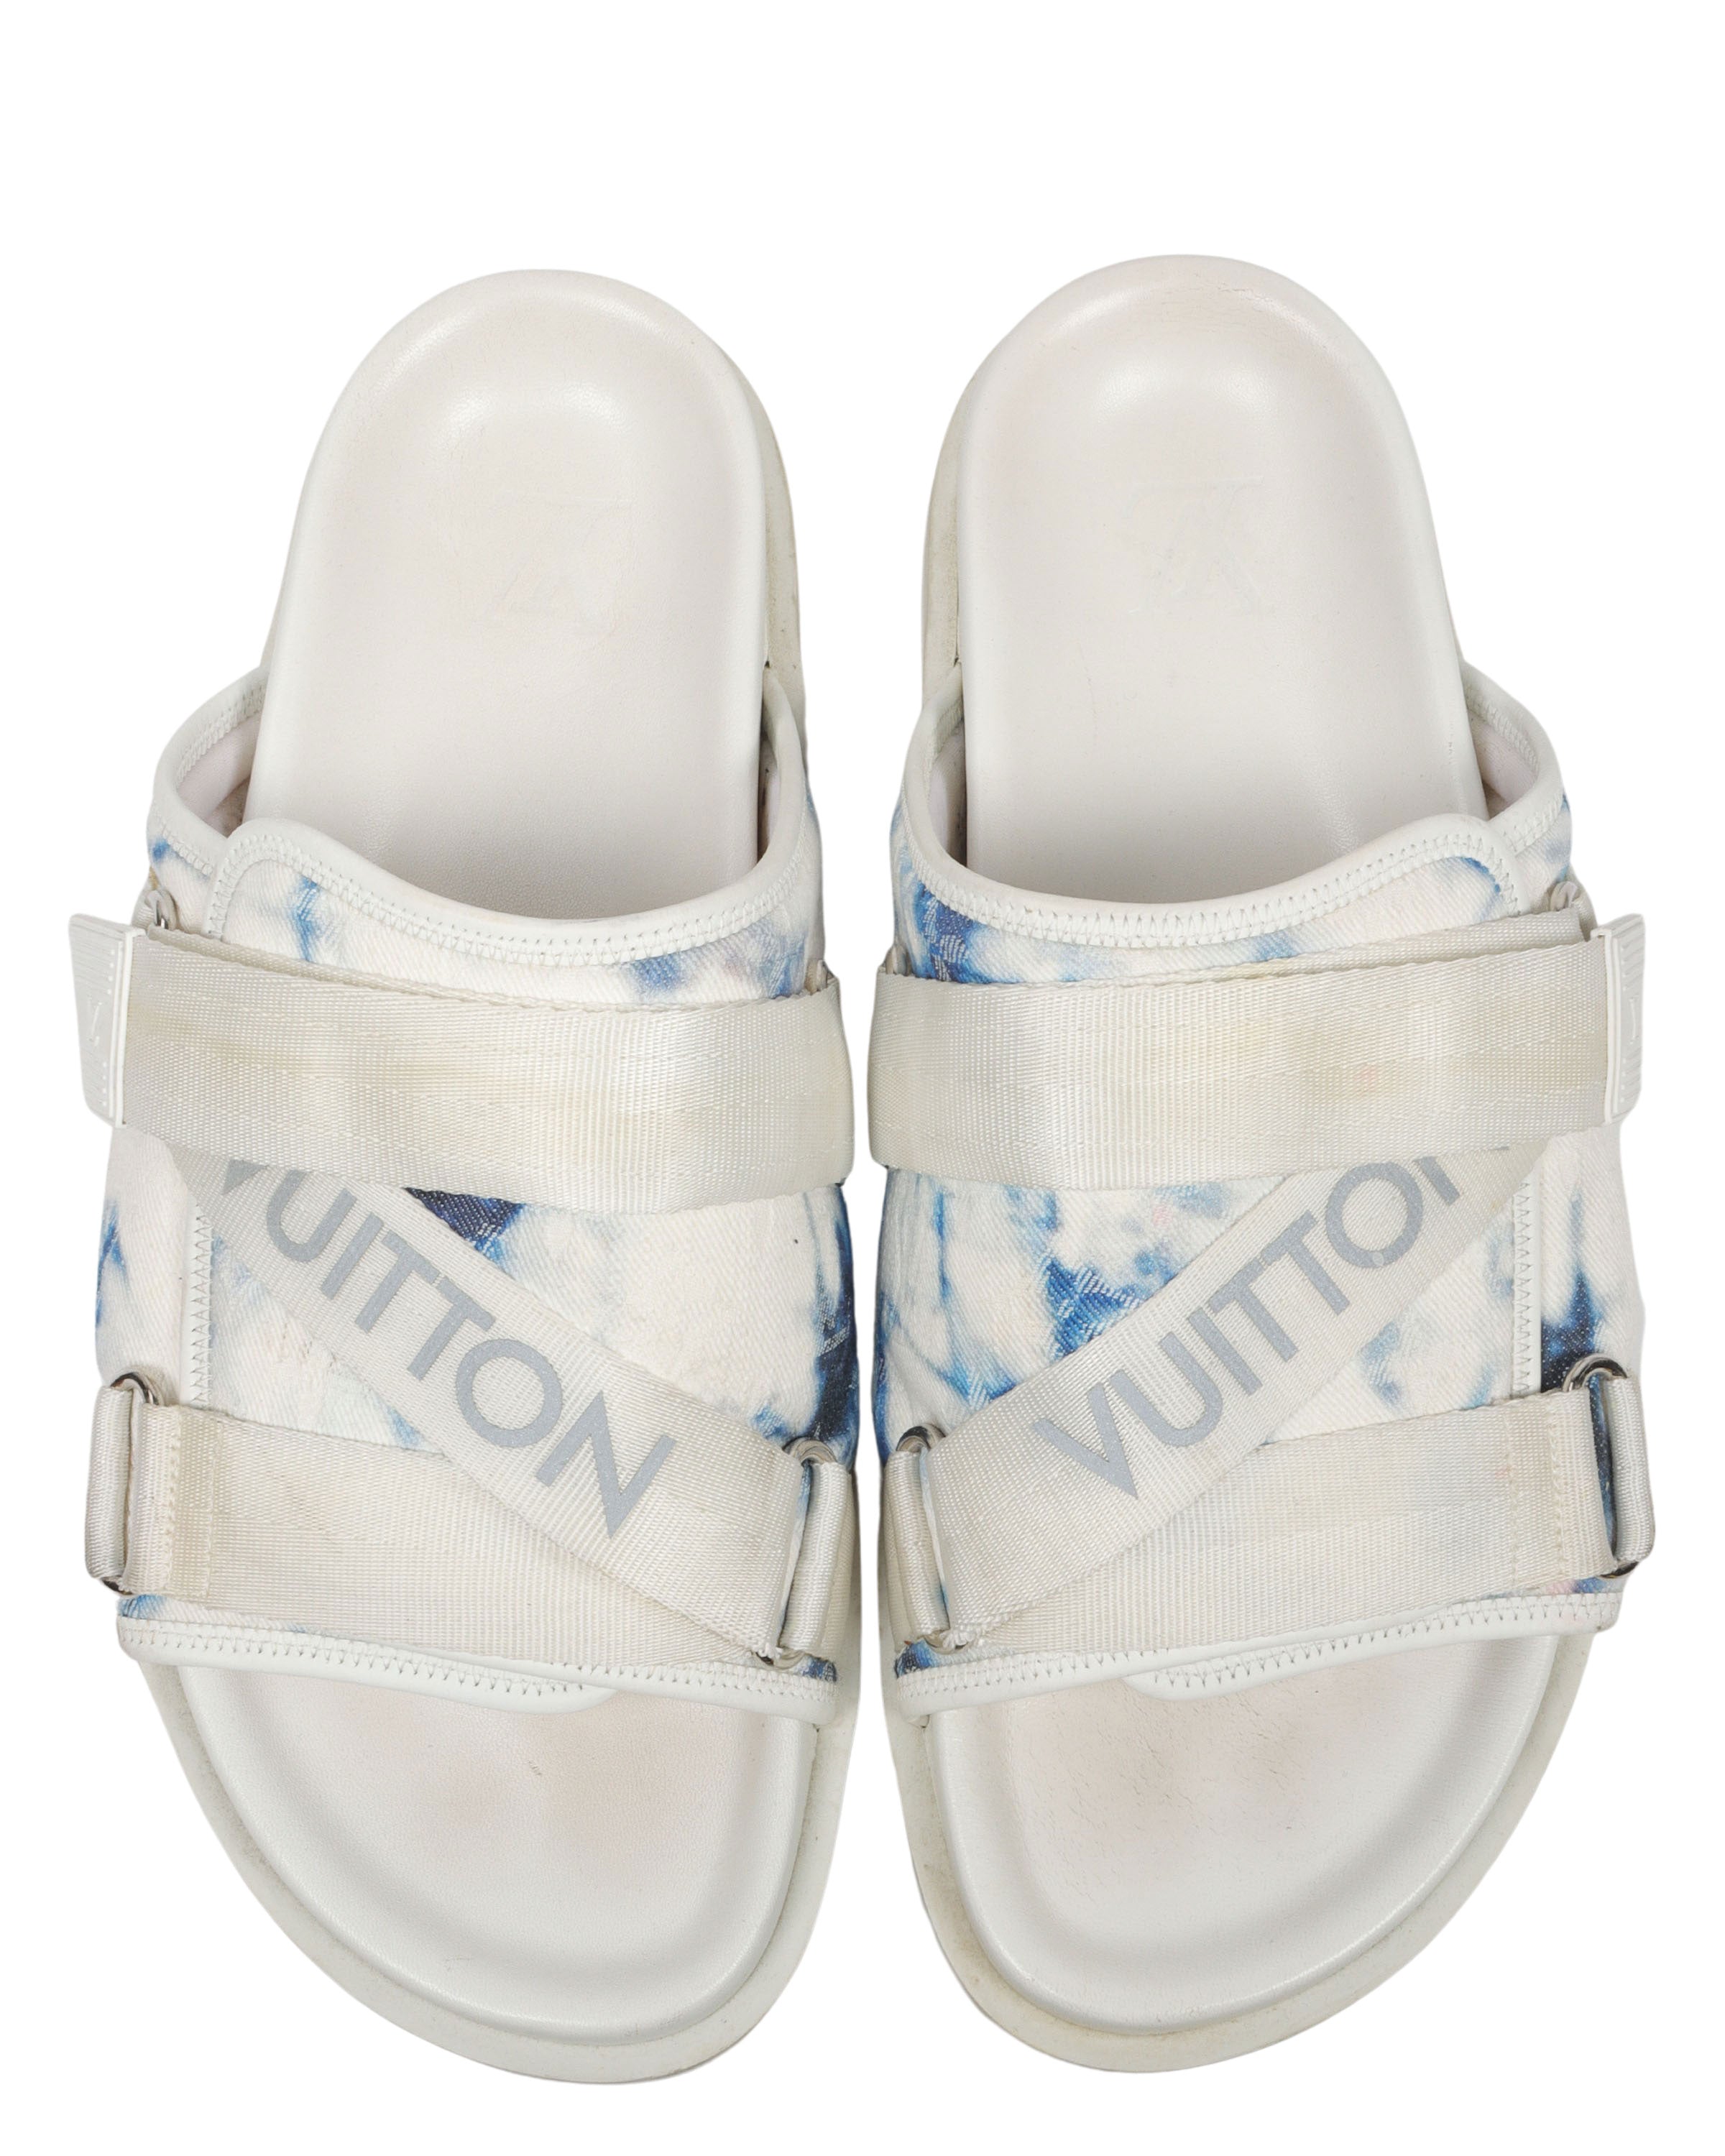 Louis Vuitton, Shoes, Rare Louis Vuitton Honolulu Monogram Sandals Mule  Shoes